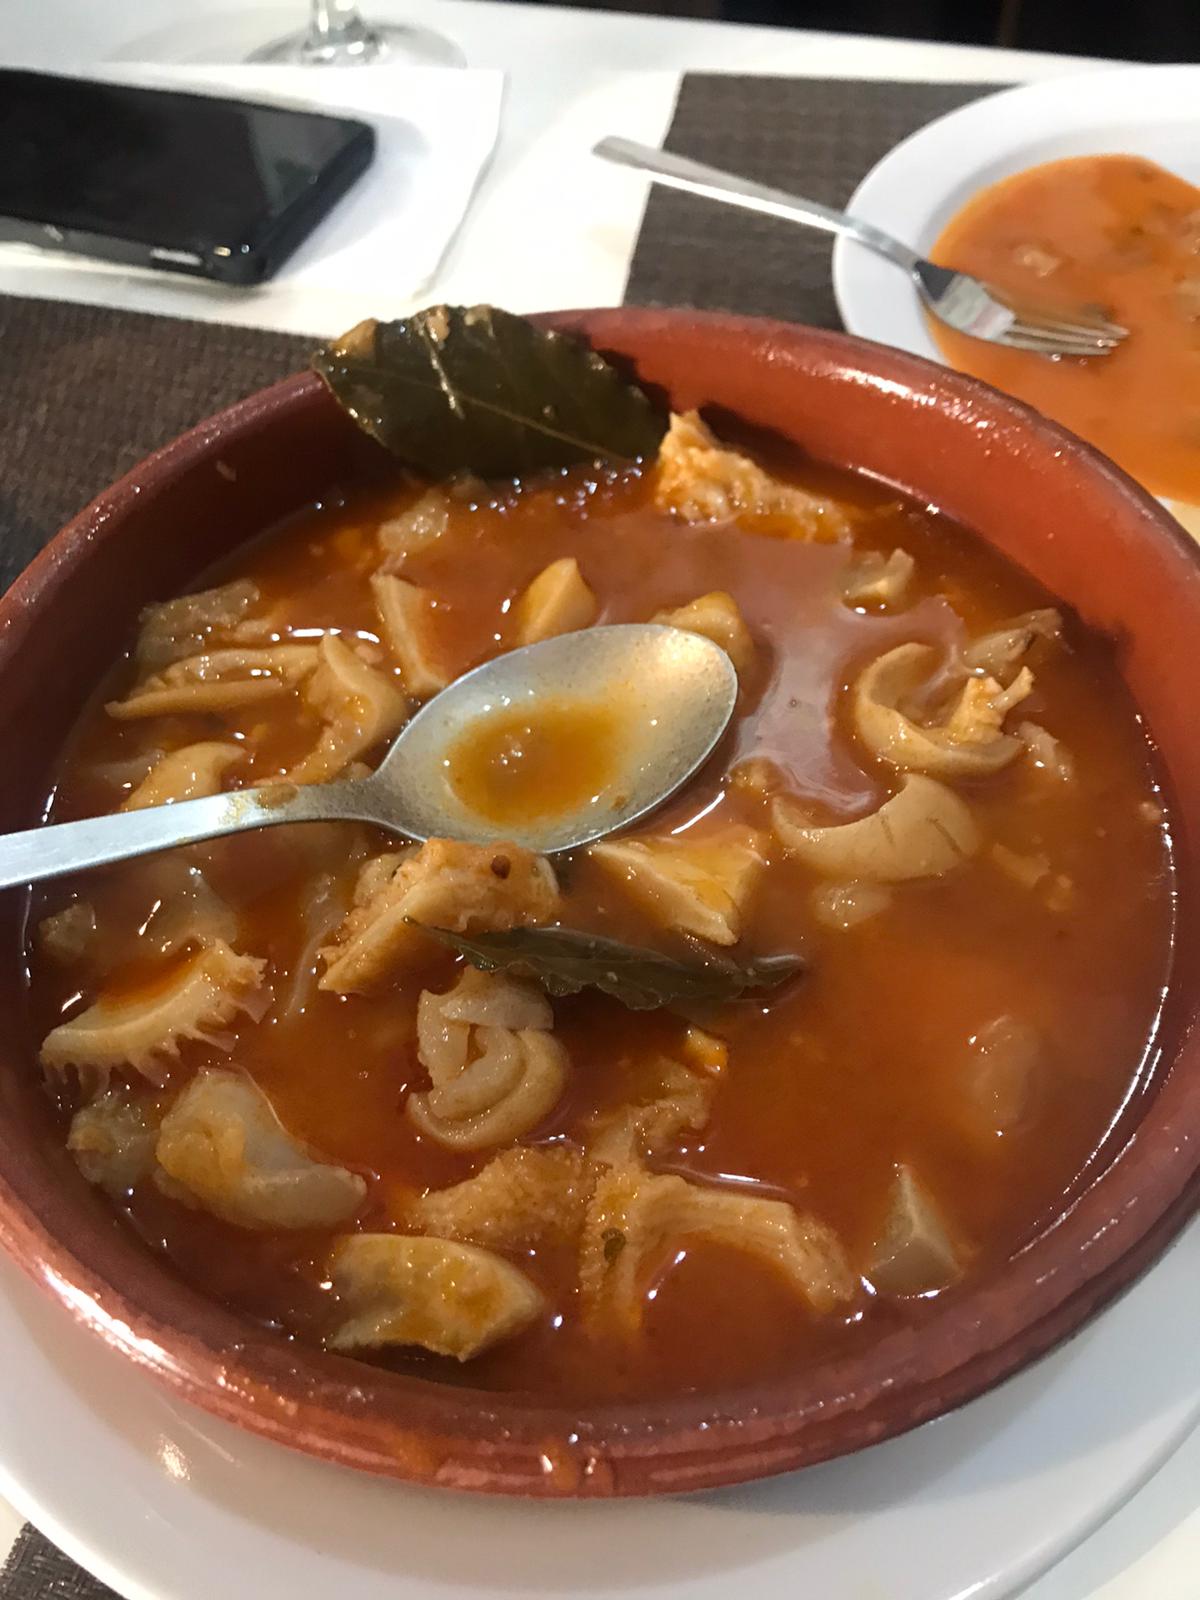 Reseña gastronómica: Restaurante La Frontera en Ponferrada 2